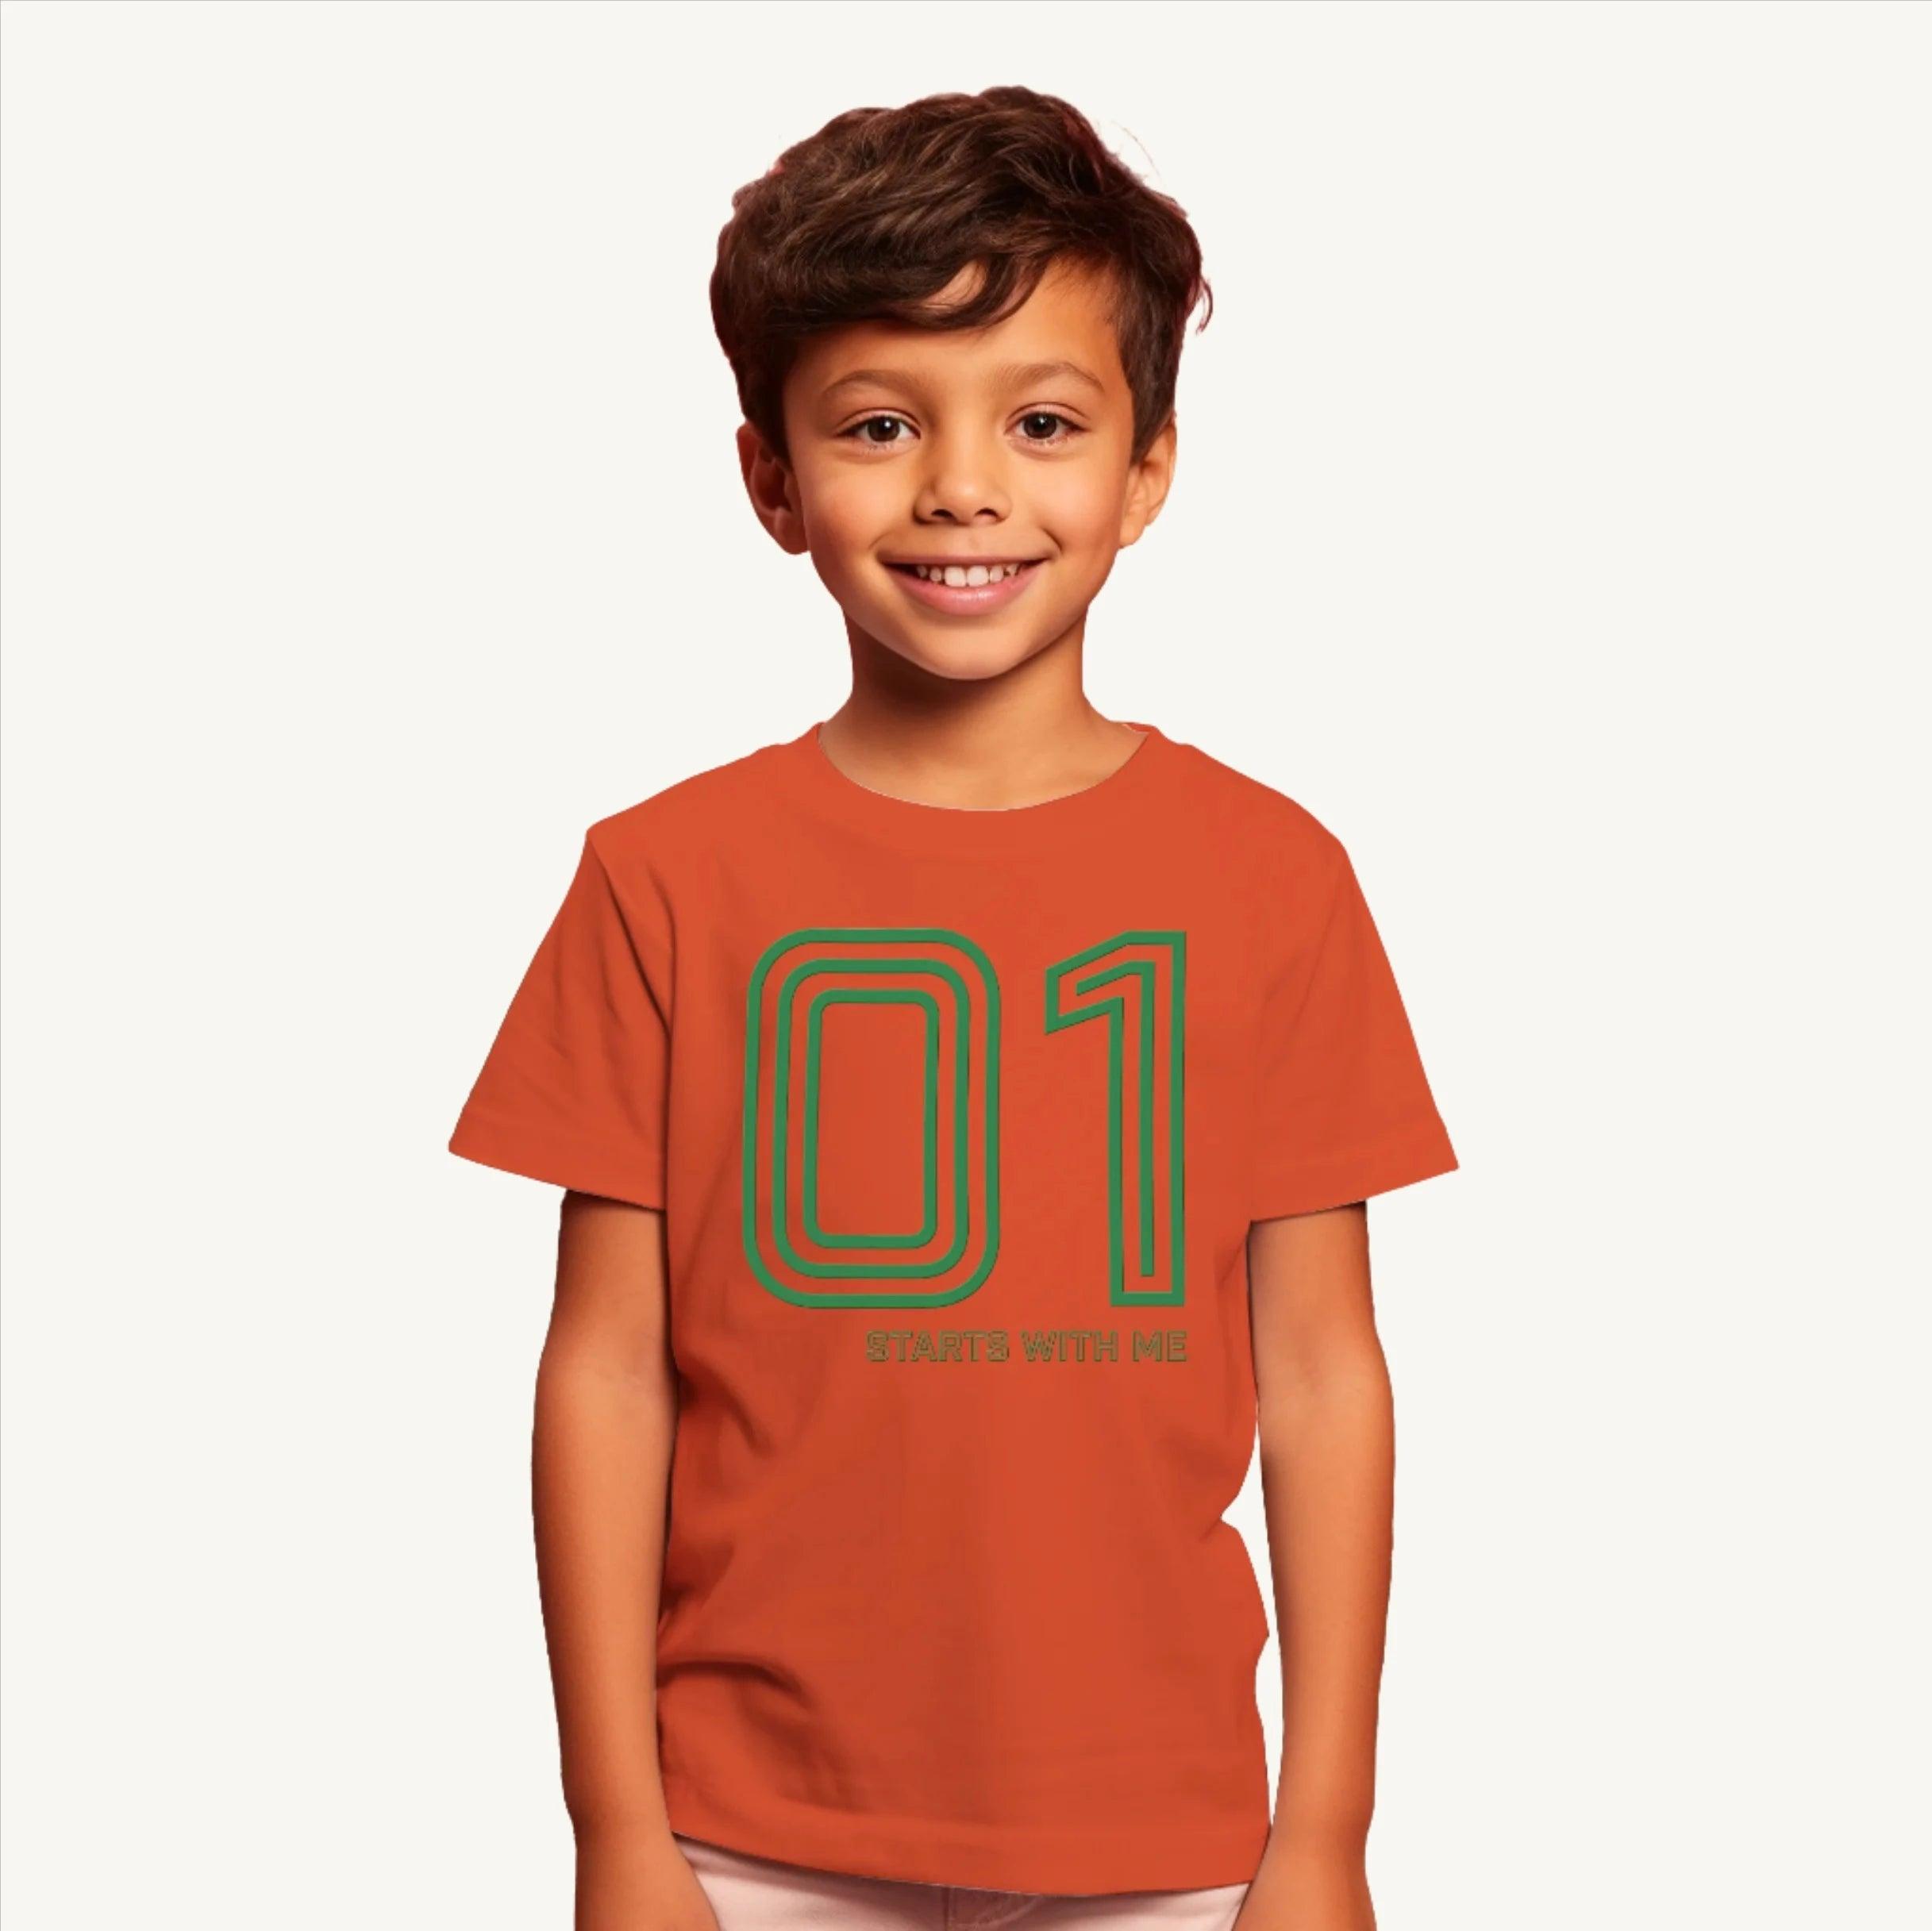 Kids 01 Print T-shirt - Guugly Wuugly